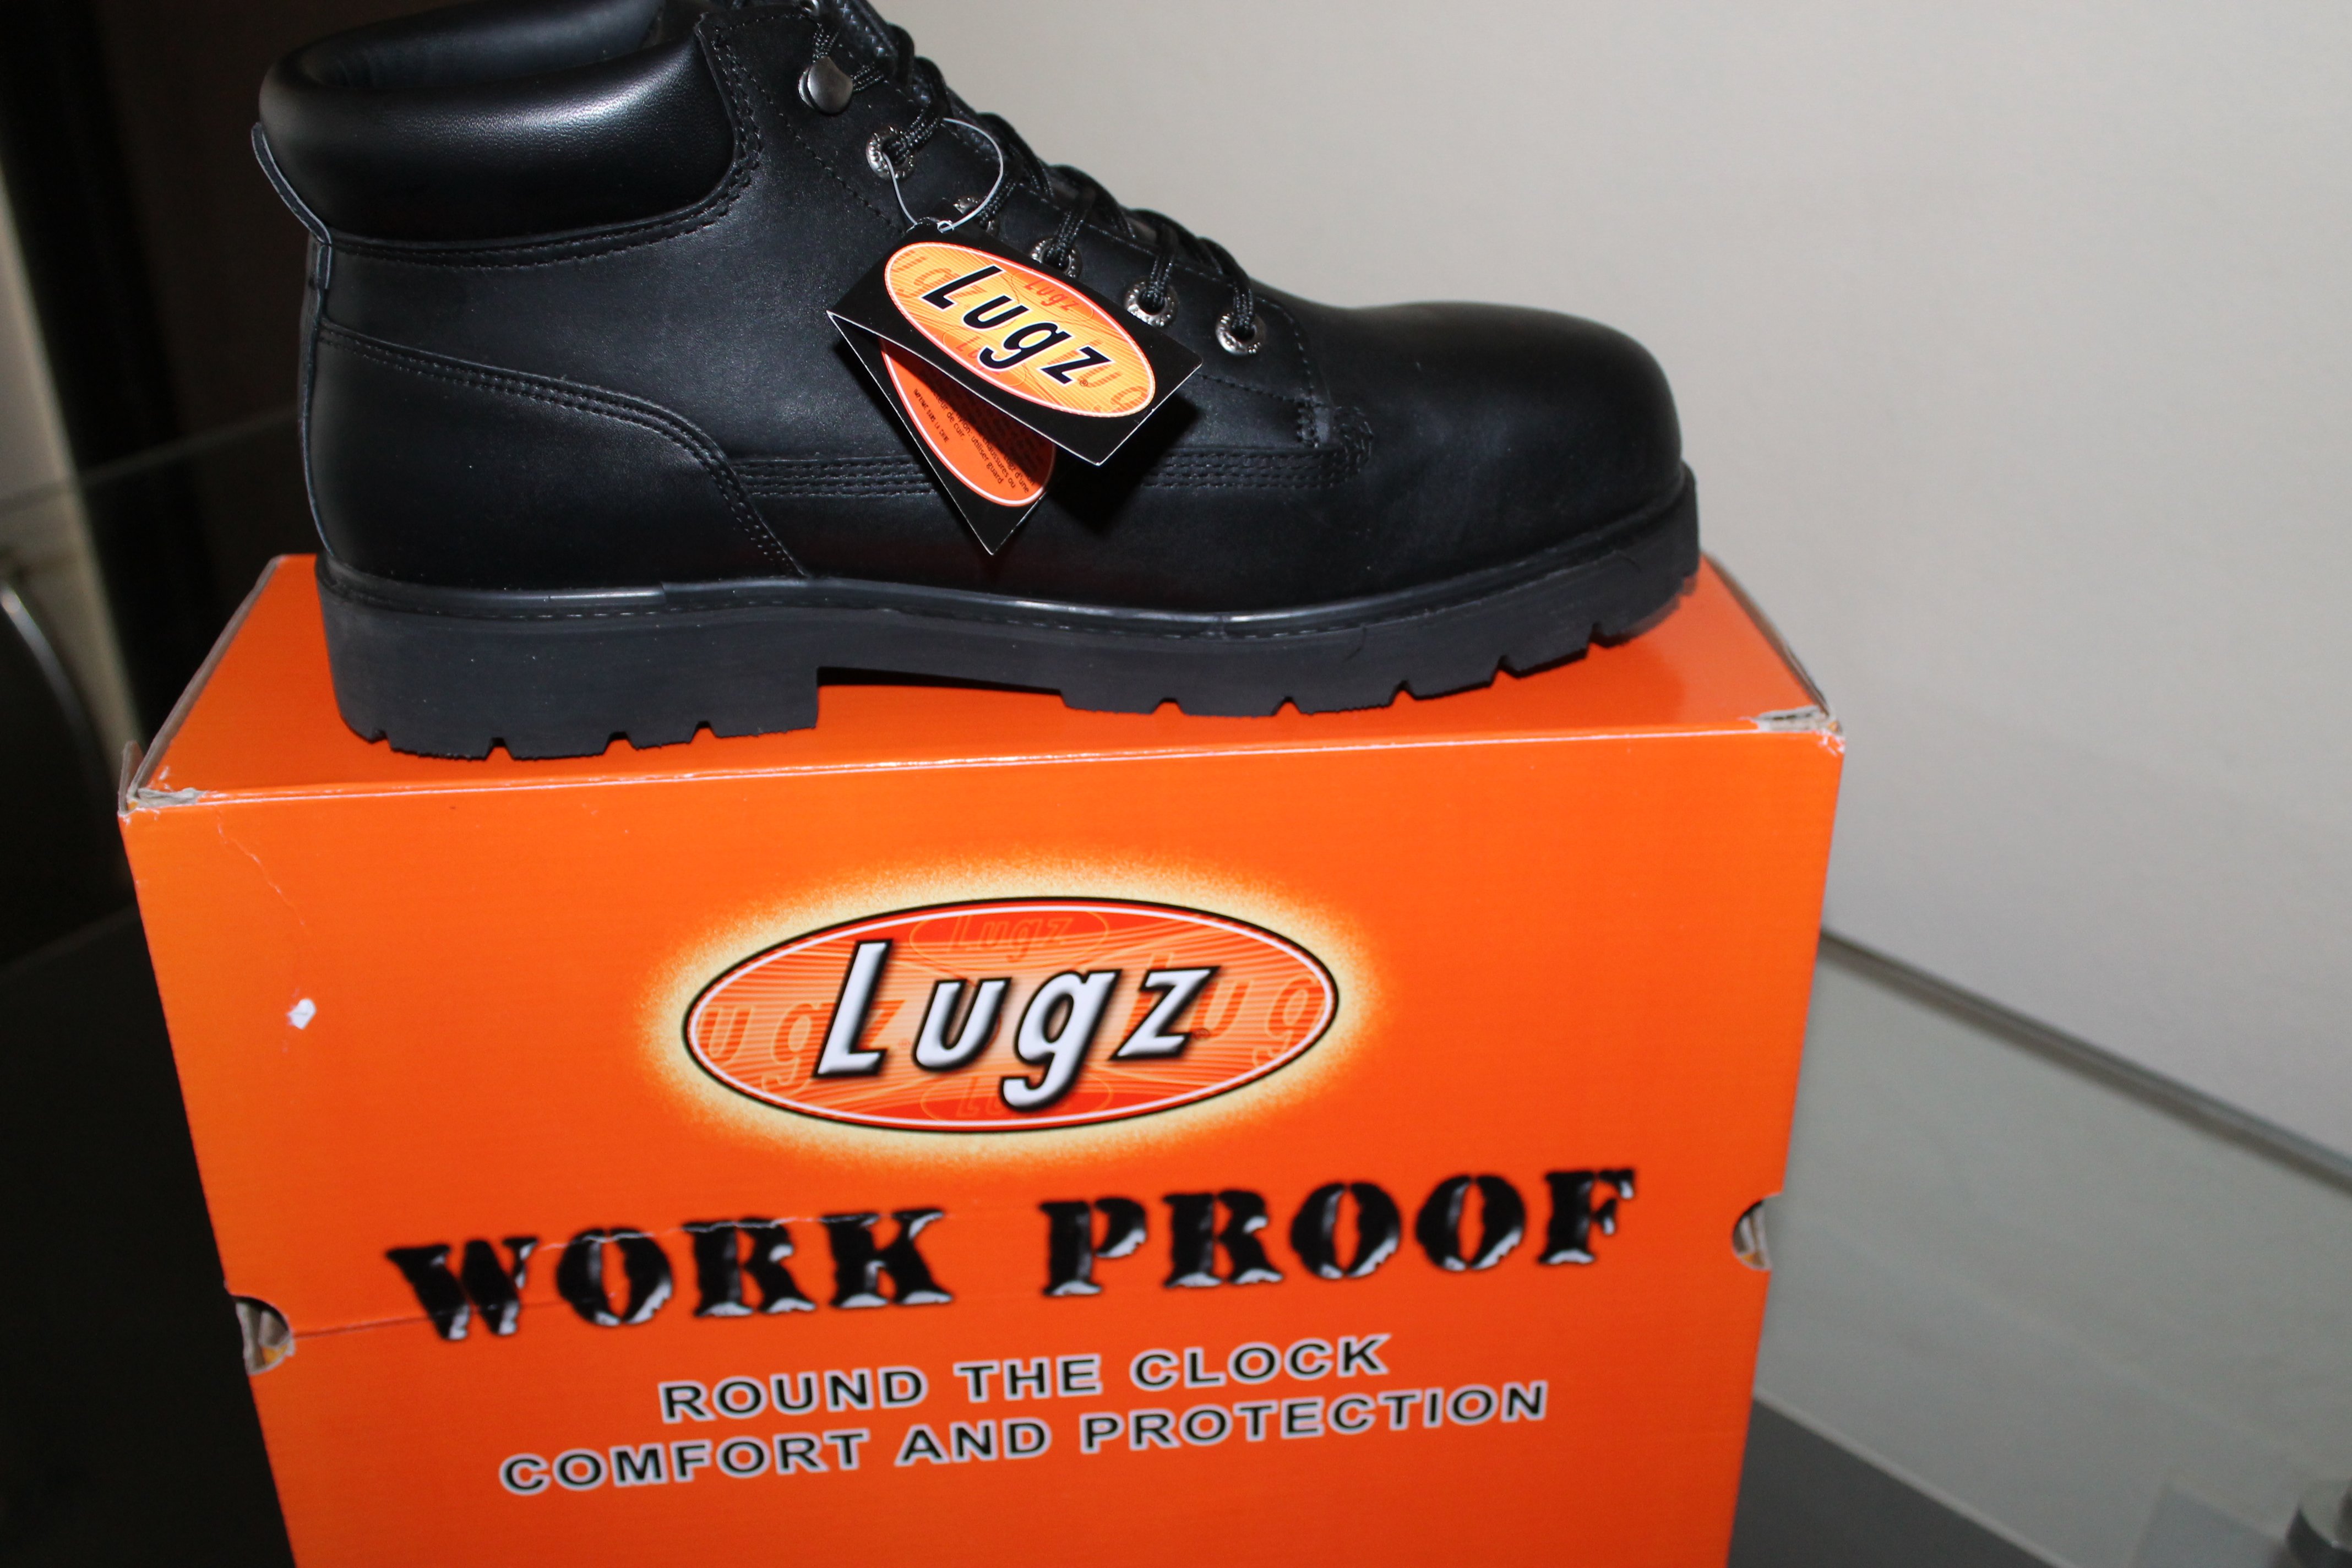 lugz steel toe boots